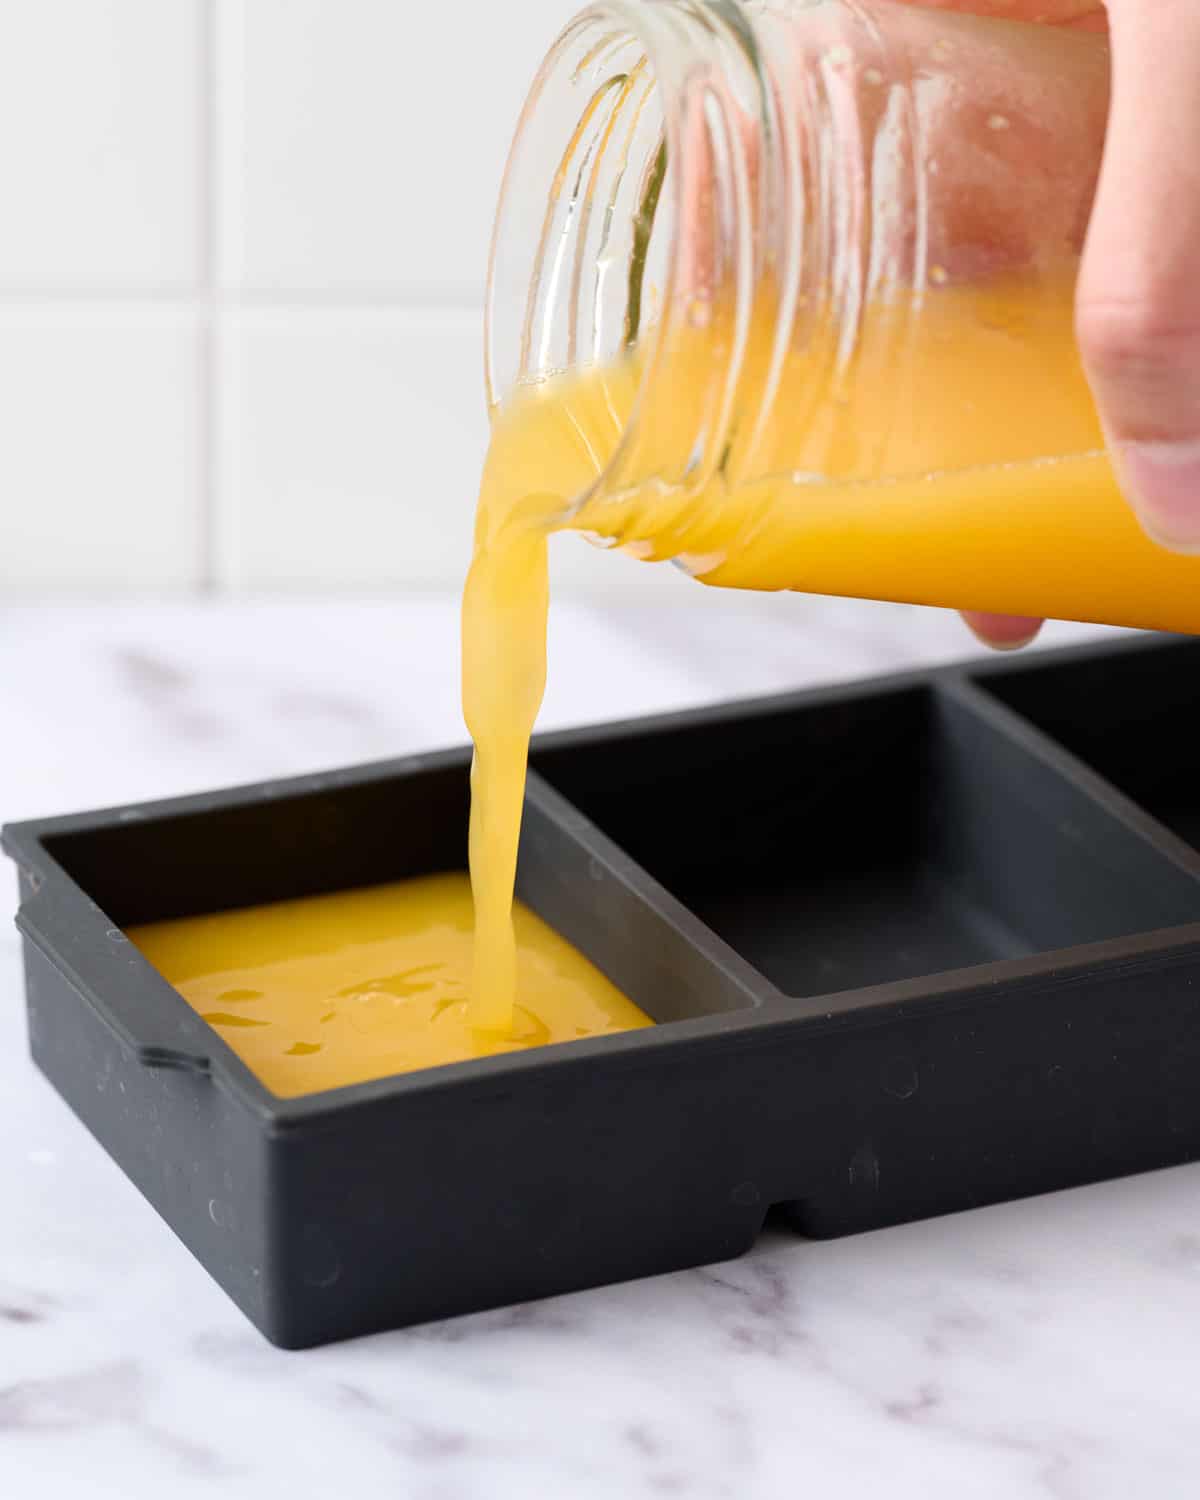 Pouring fresh orange juice into ice cubes for freezing.